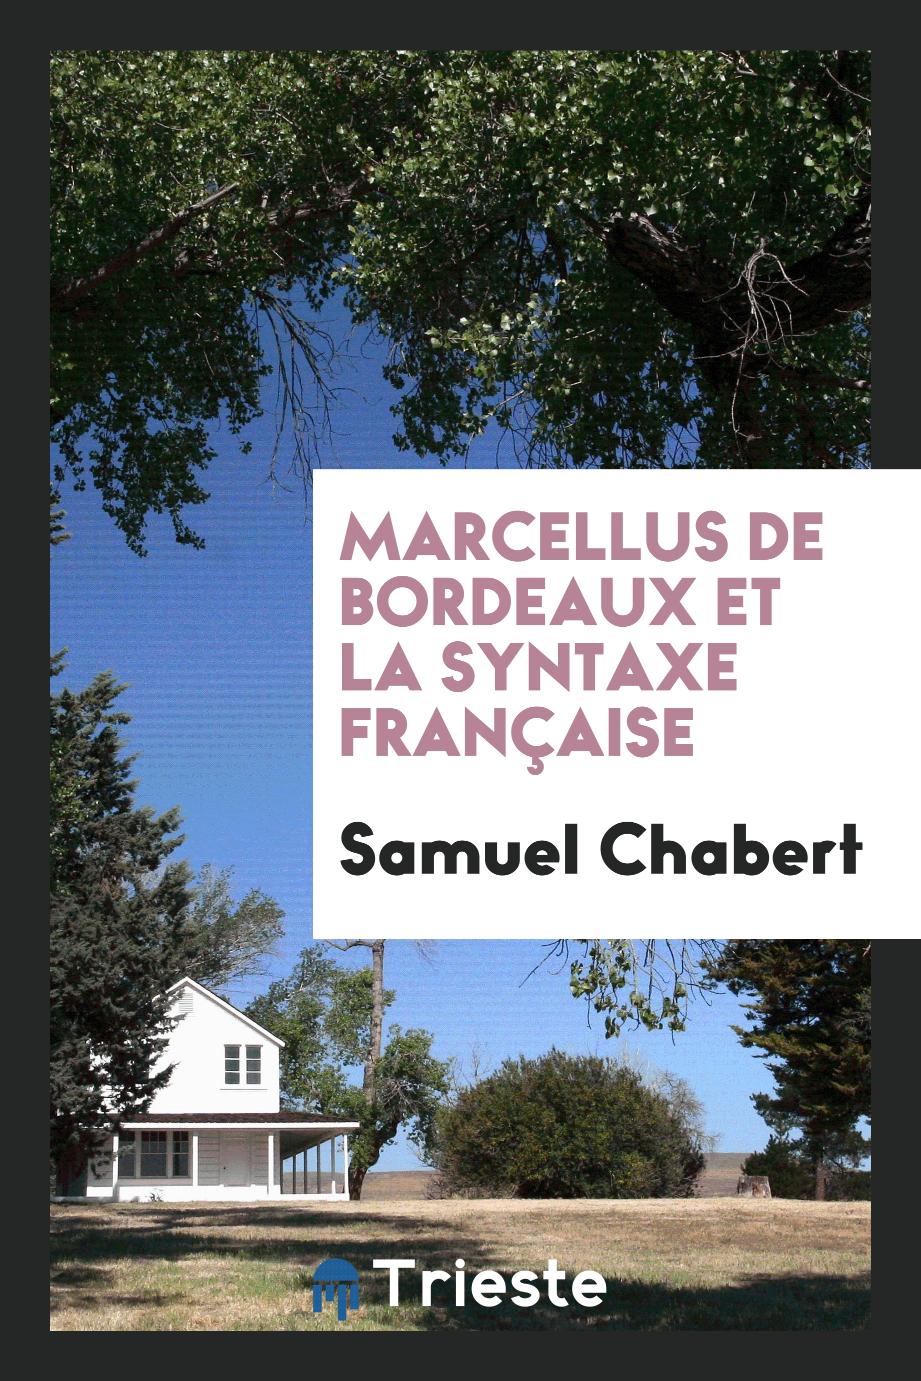 Samuel Chabert - Marcellus de Bordeaux et la Syntaxe Française